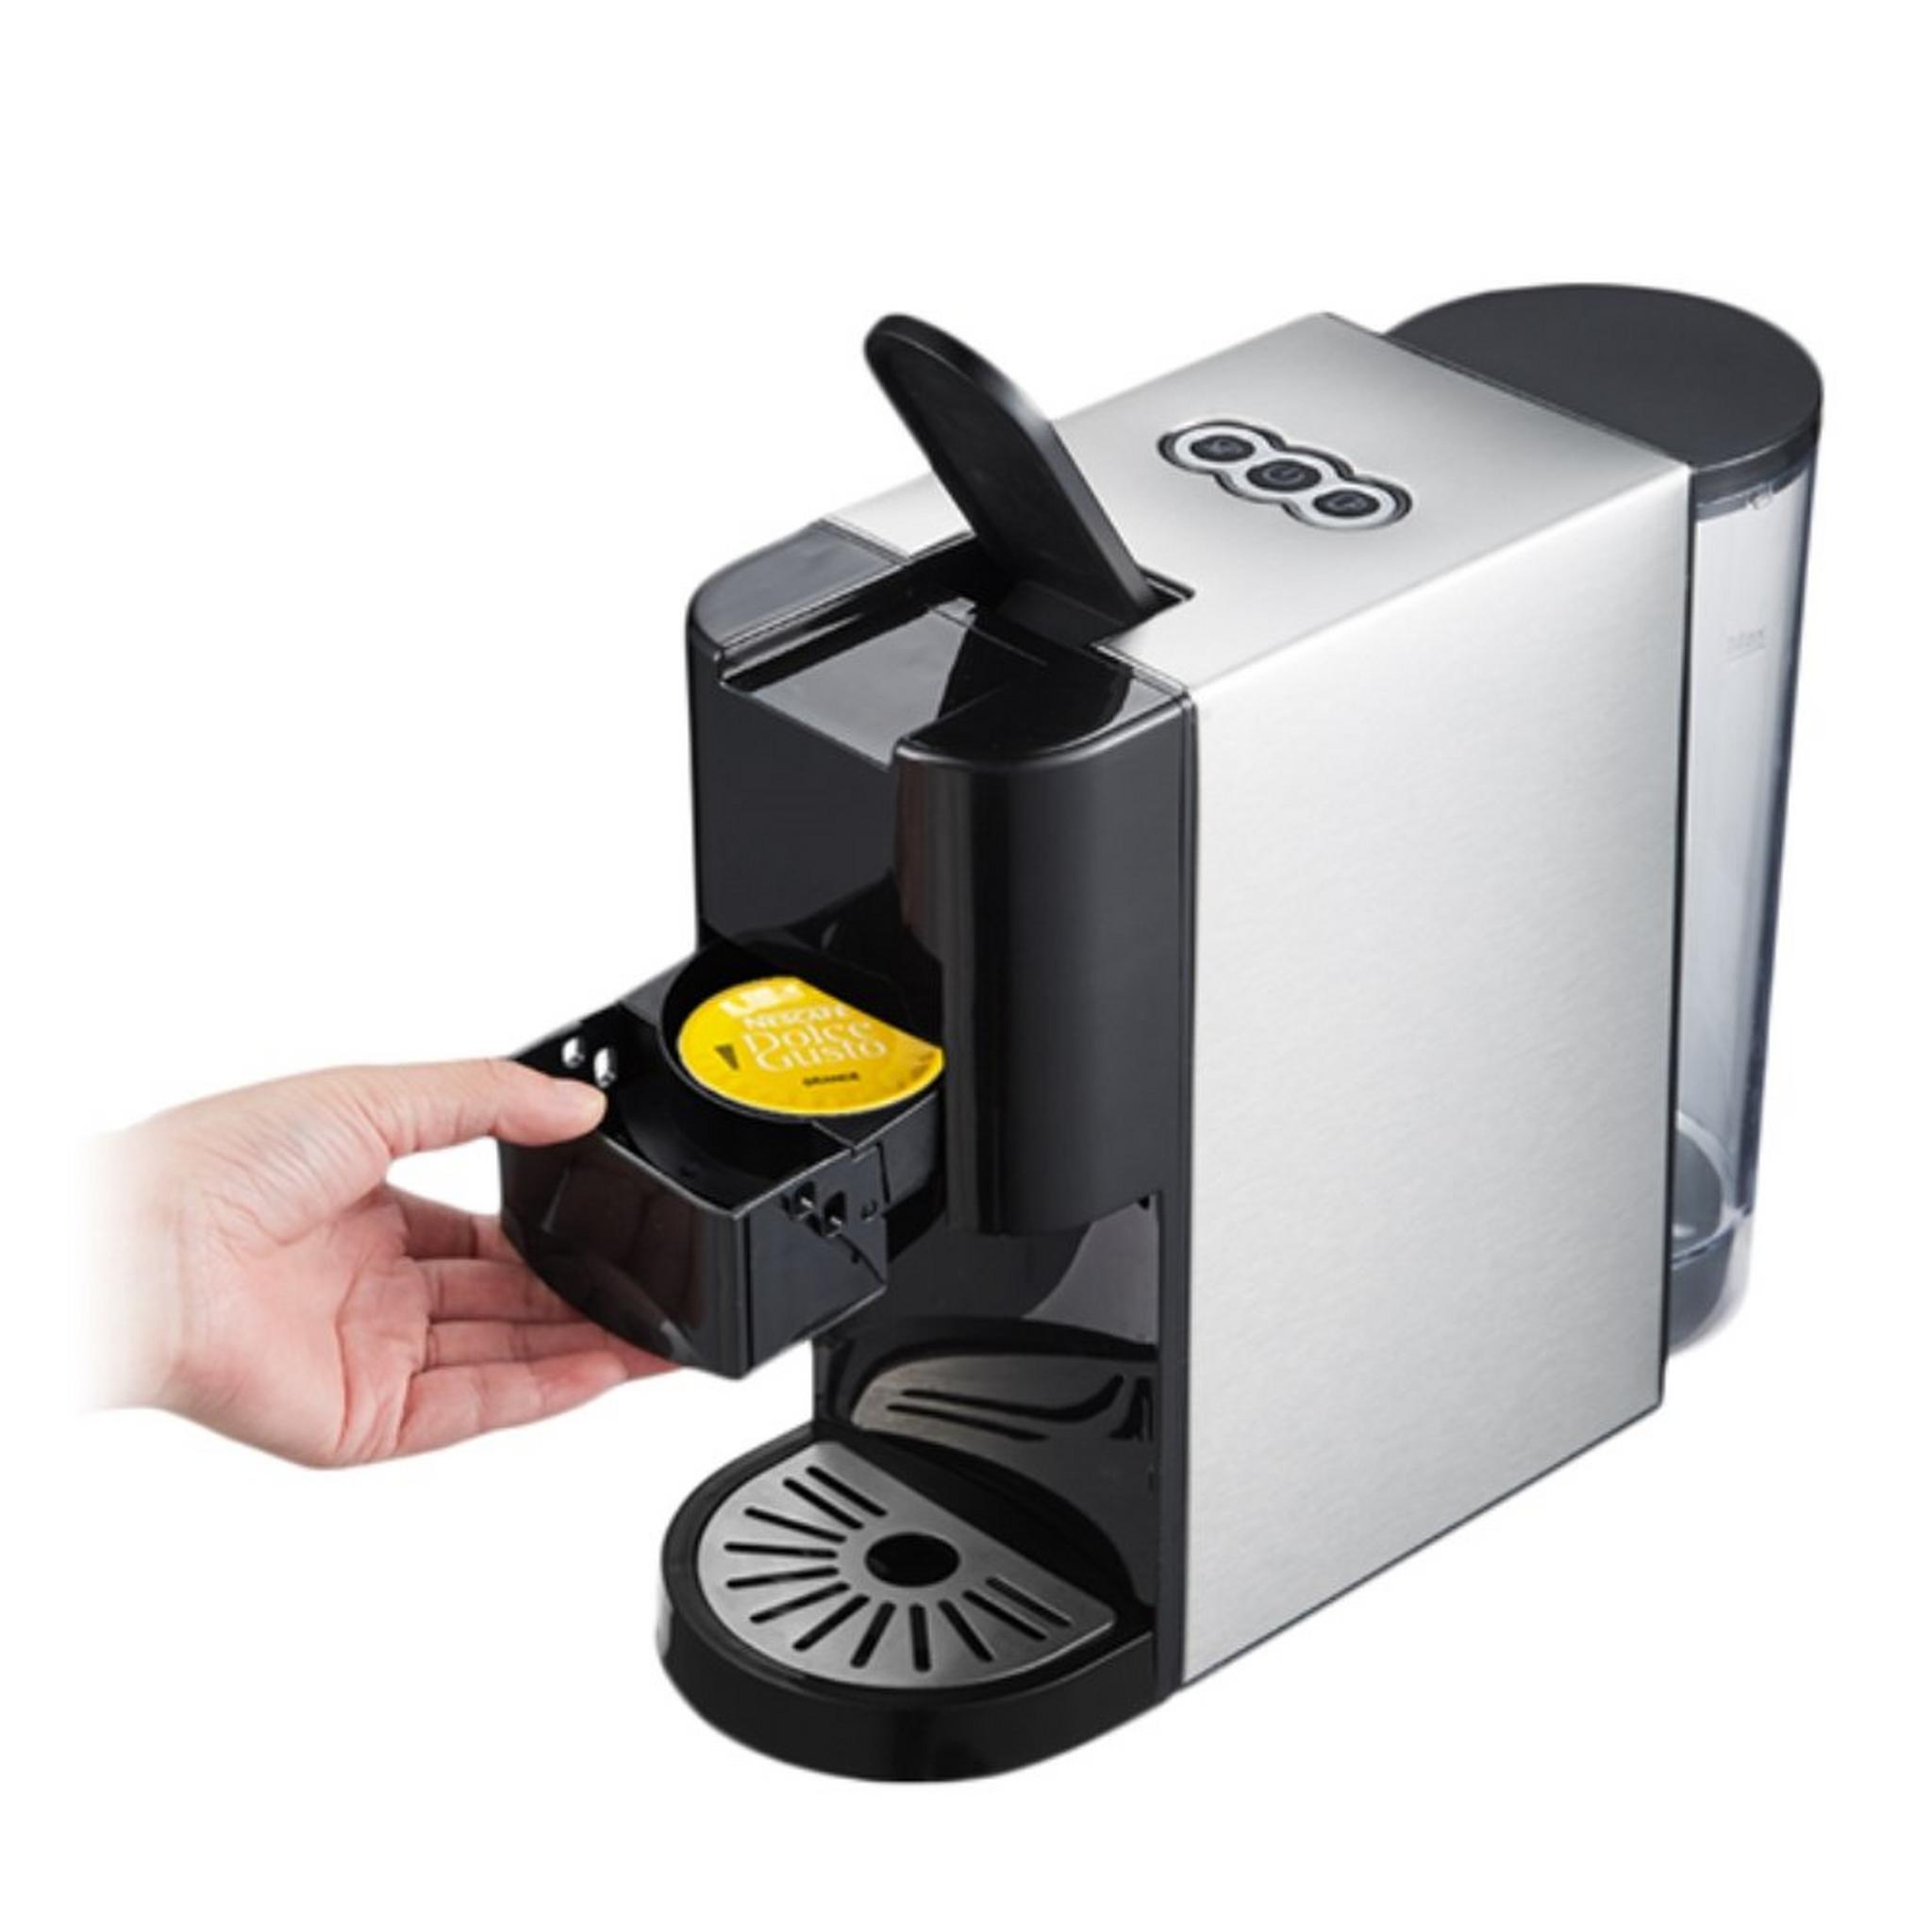 ماكينة تحضير القهوة متعددة الكبسولات من ونسا، قدرة 1450 واط، سعة 0.8 لتر، AC-513K - أسود/فضي